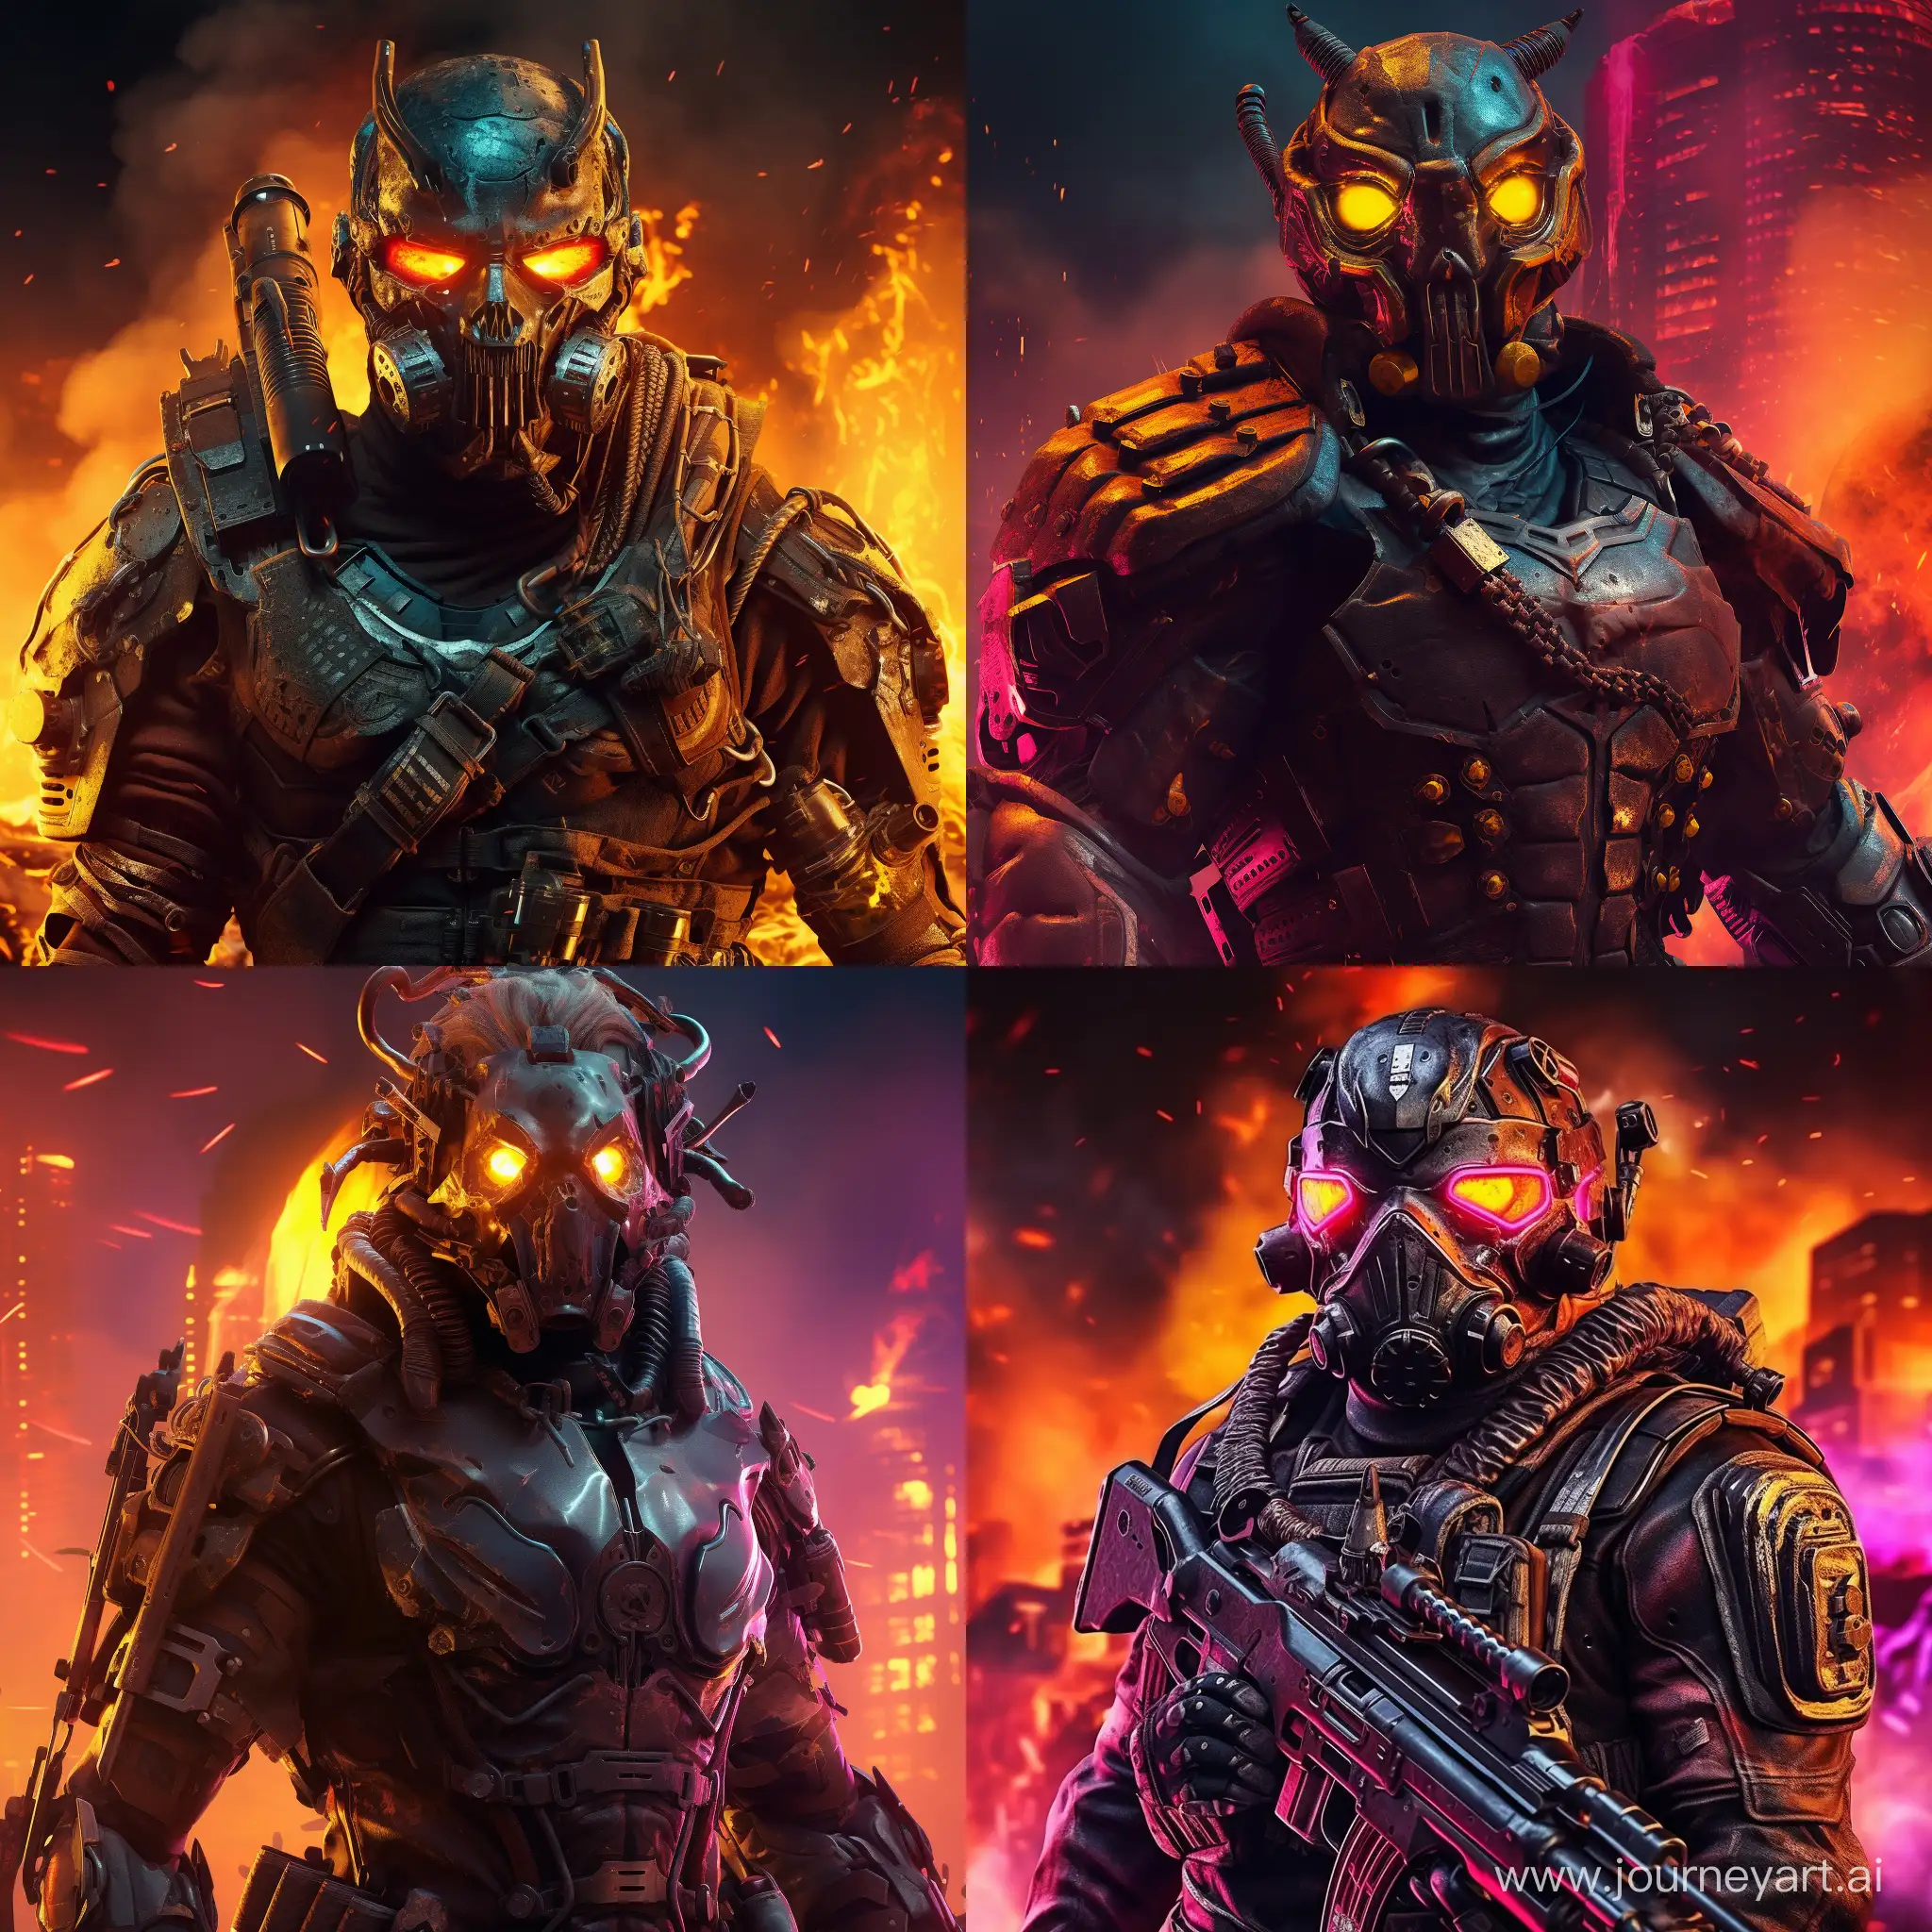 солдат будущего в железной маске-противогаз, оружие щит, дробовик, киберпанк, неон, дым, фон горящий, разрушенный город, стиль картинки классика